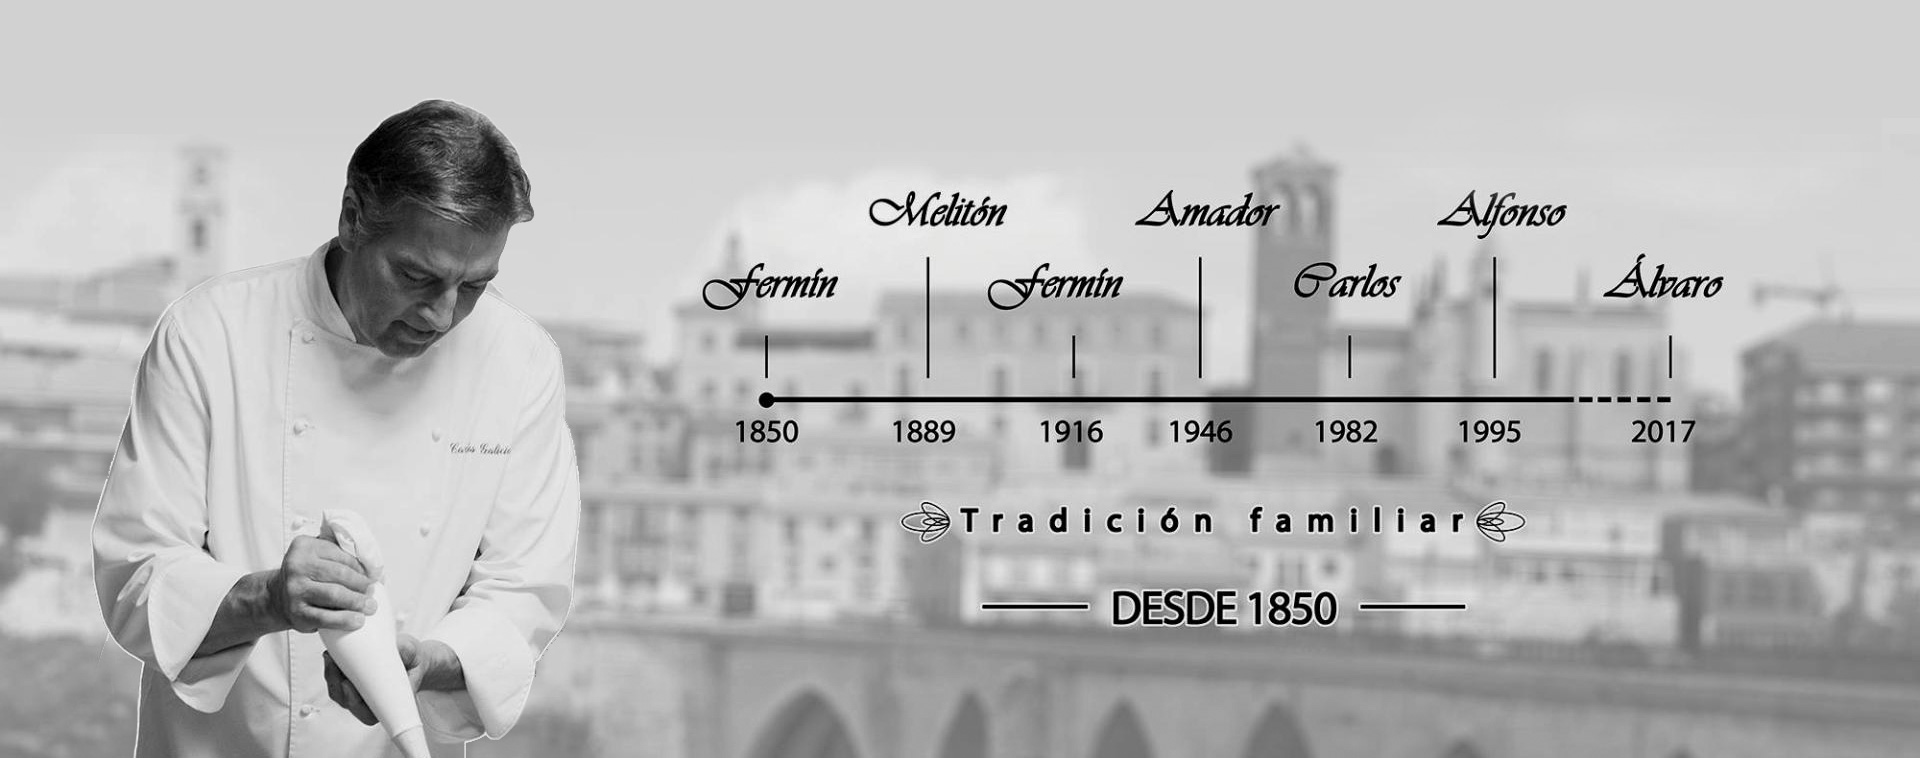 Imagen de 7 generaciones de pasteleros en la centenaria y tradicional Pastelería Galicia de Tordesillas, en Valladolid